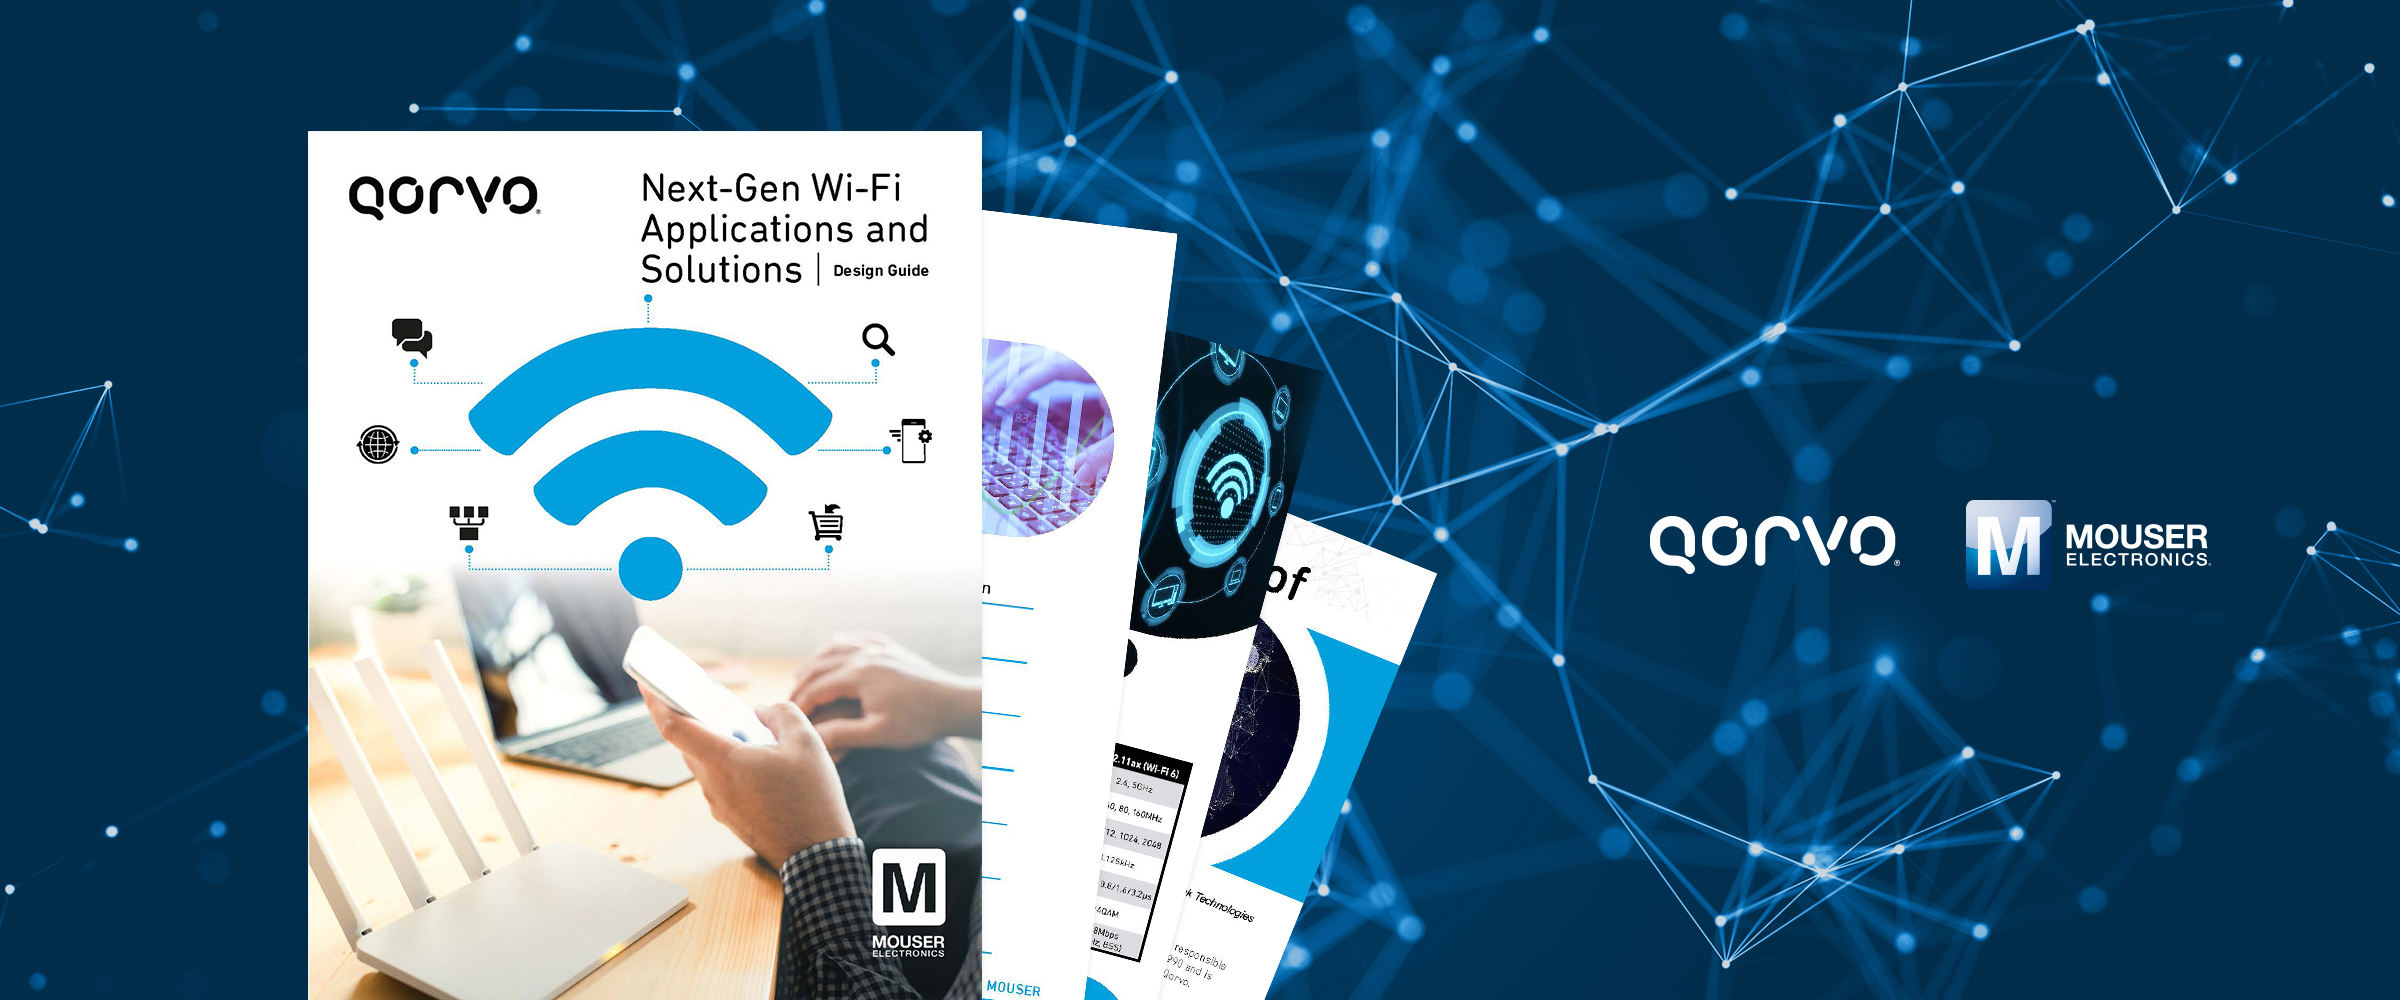 マウザー Qorvo社と共同で Wi Fi 6アプリケーションおよびソリューションを特集したebookを公開 マウザー エレクトロニクスのプレスリリース